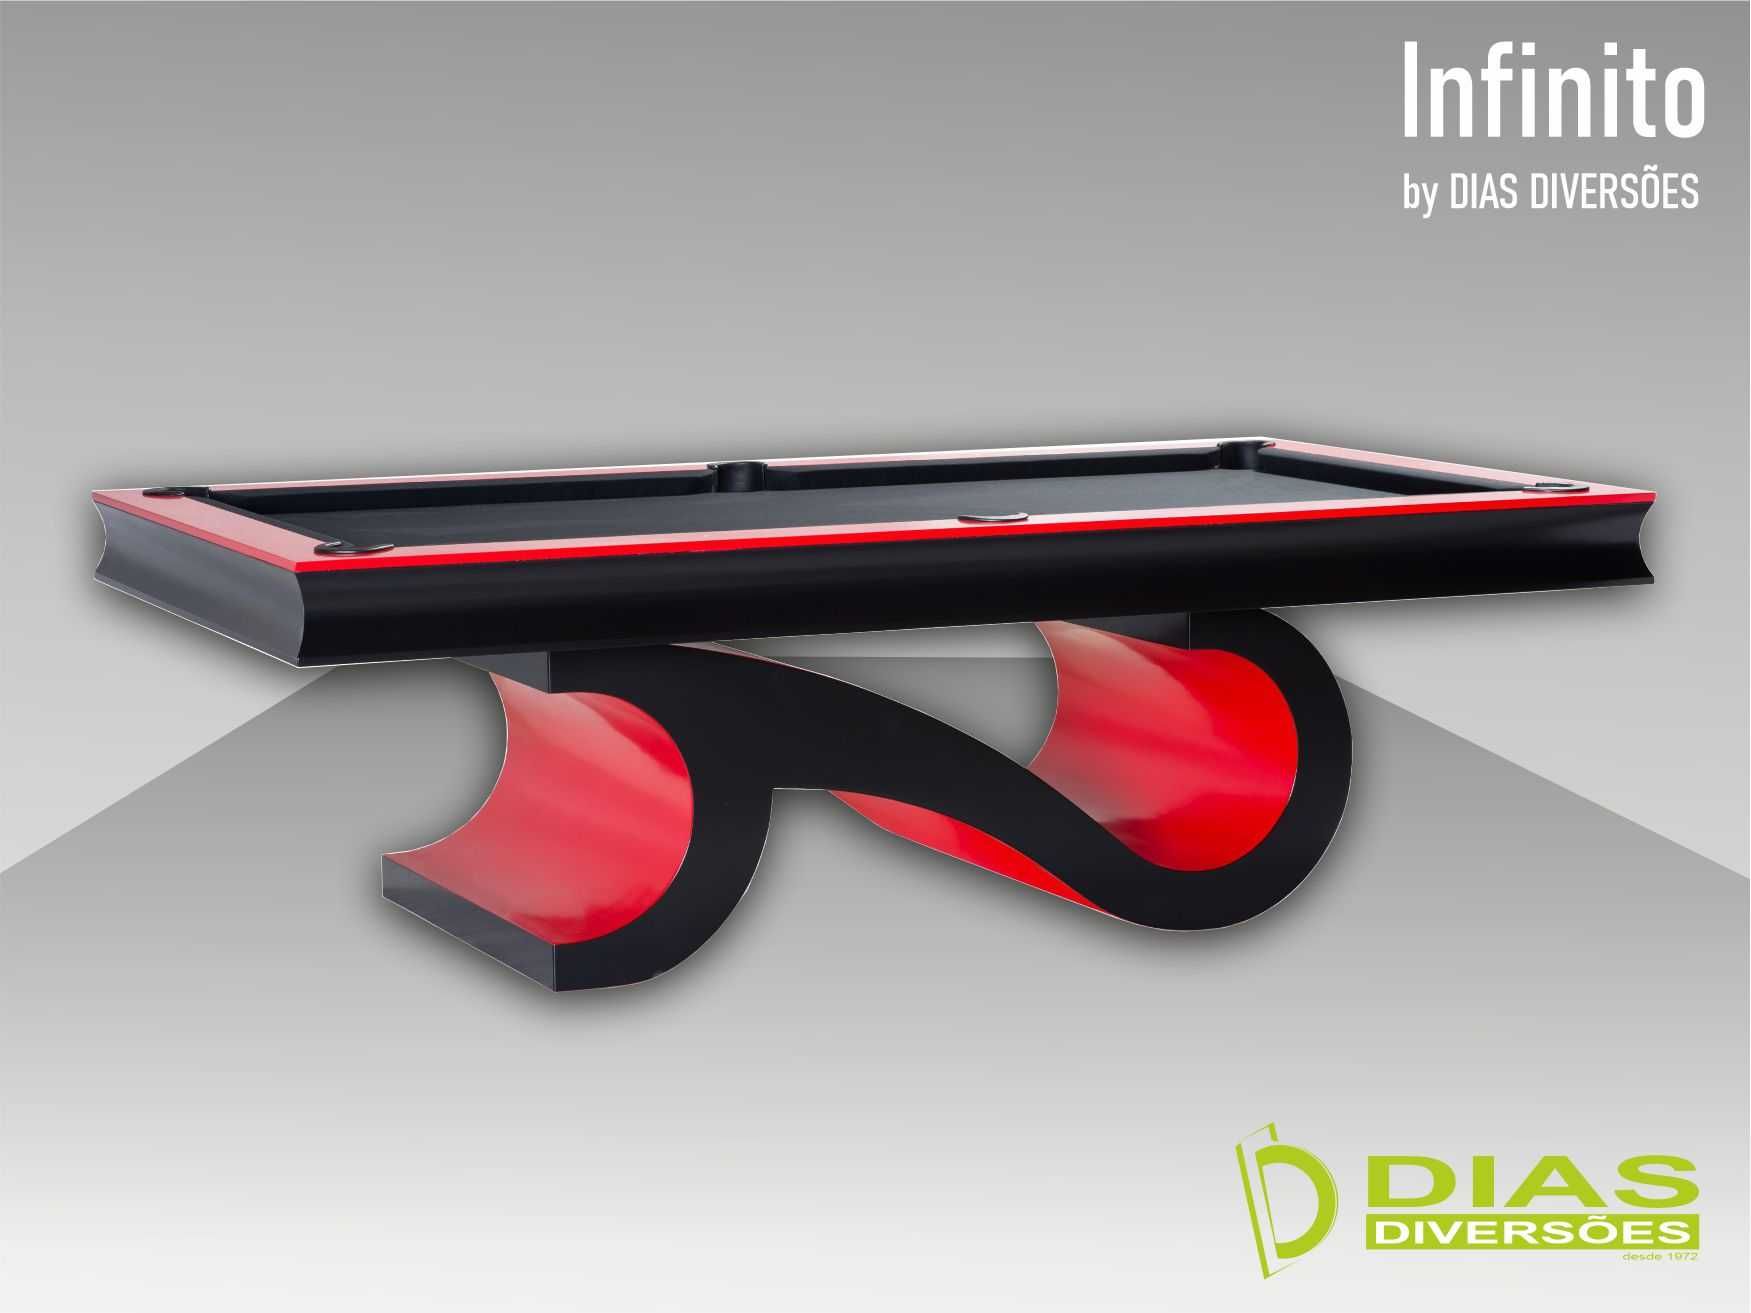 Novo - Snooker/Bilhar modelo "Infinito"